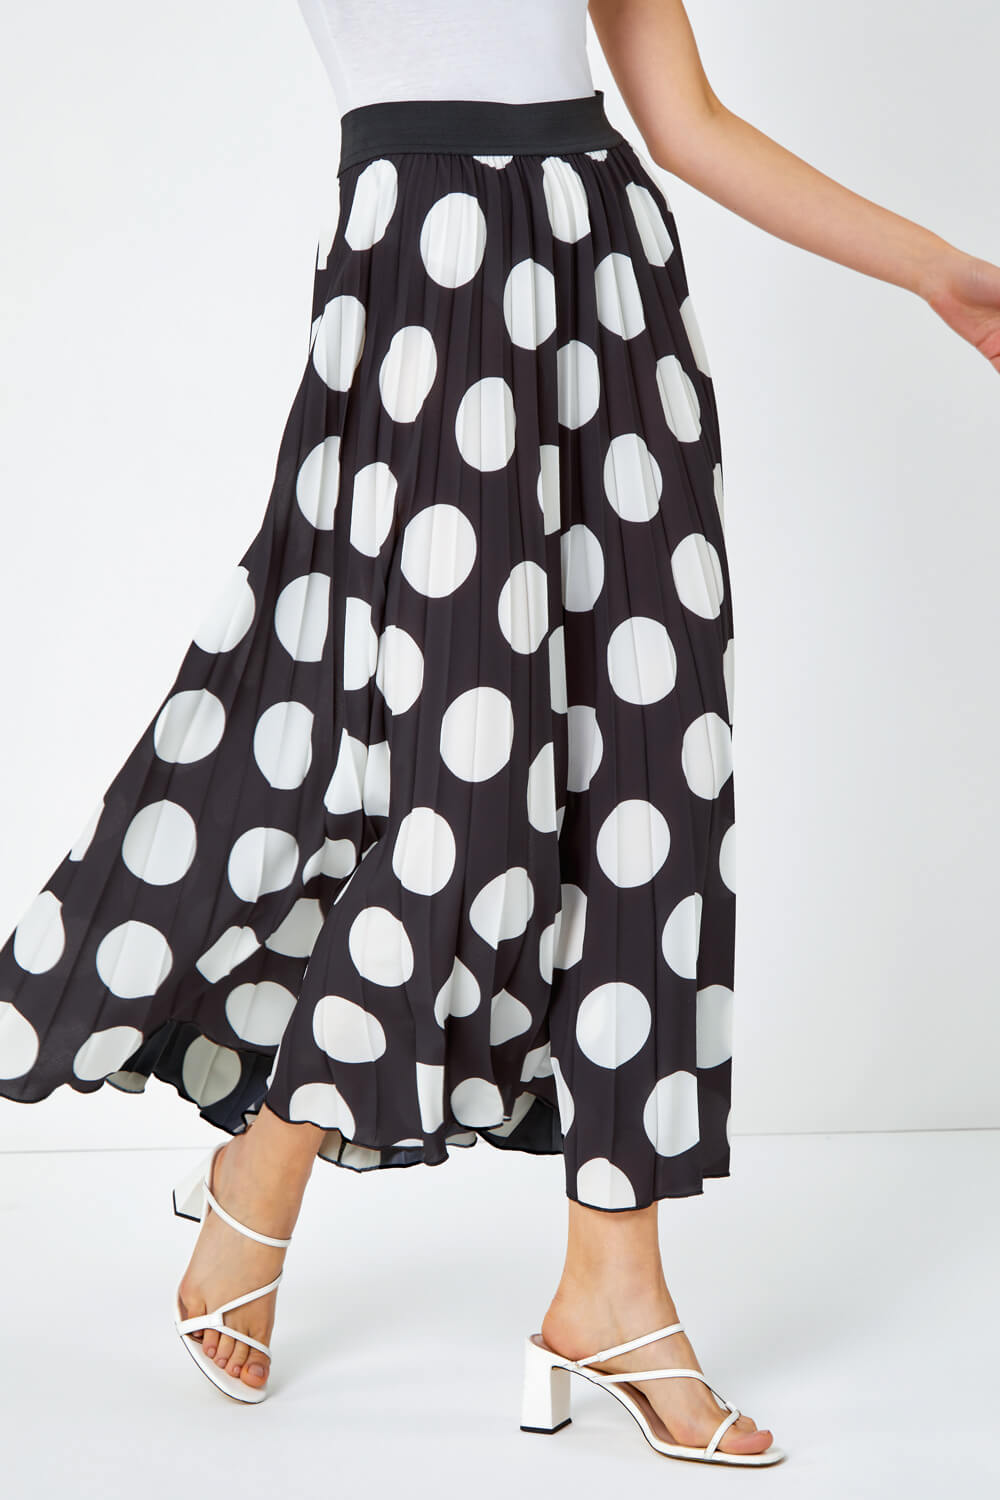 Black Polka Dot Pleated Midi Skirt, Image 4 of 5